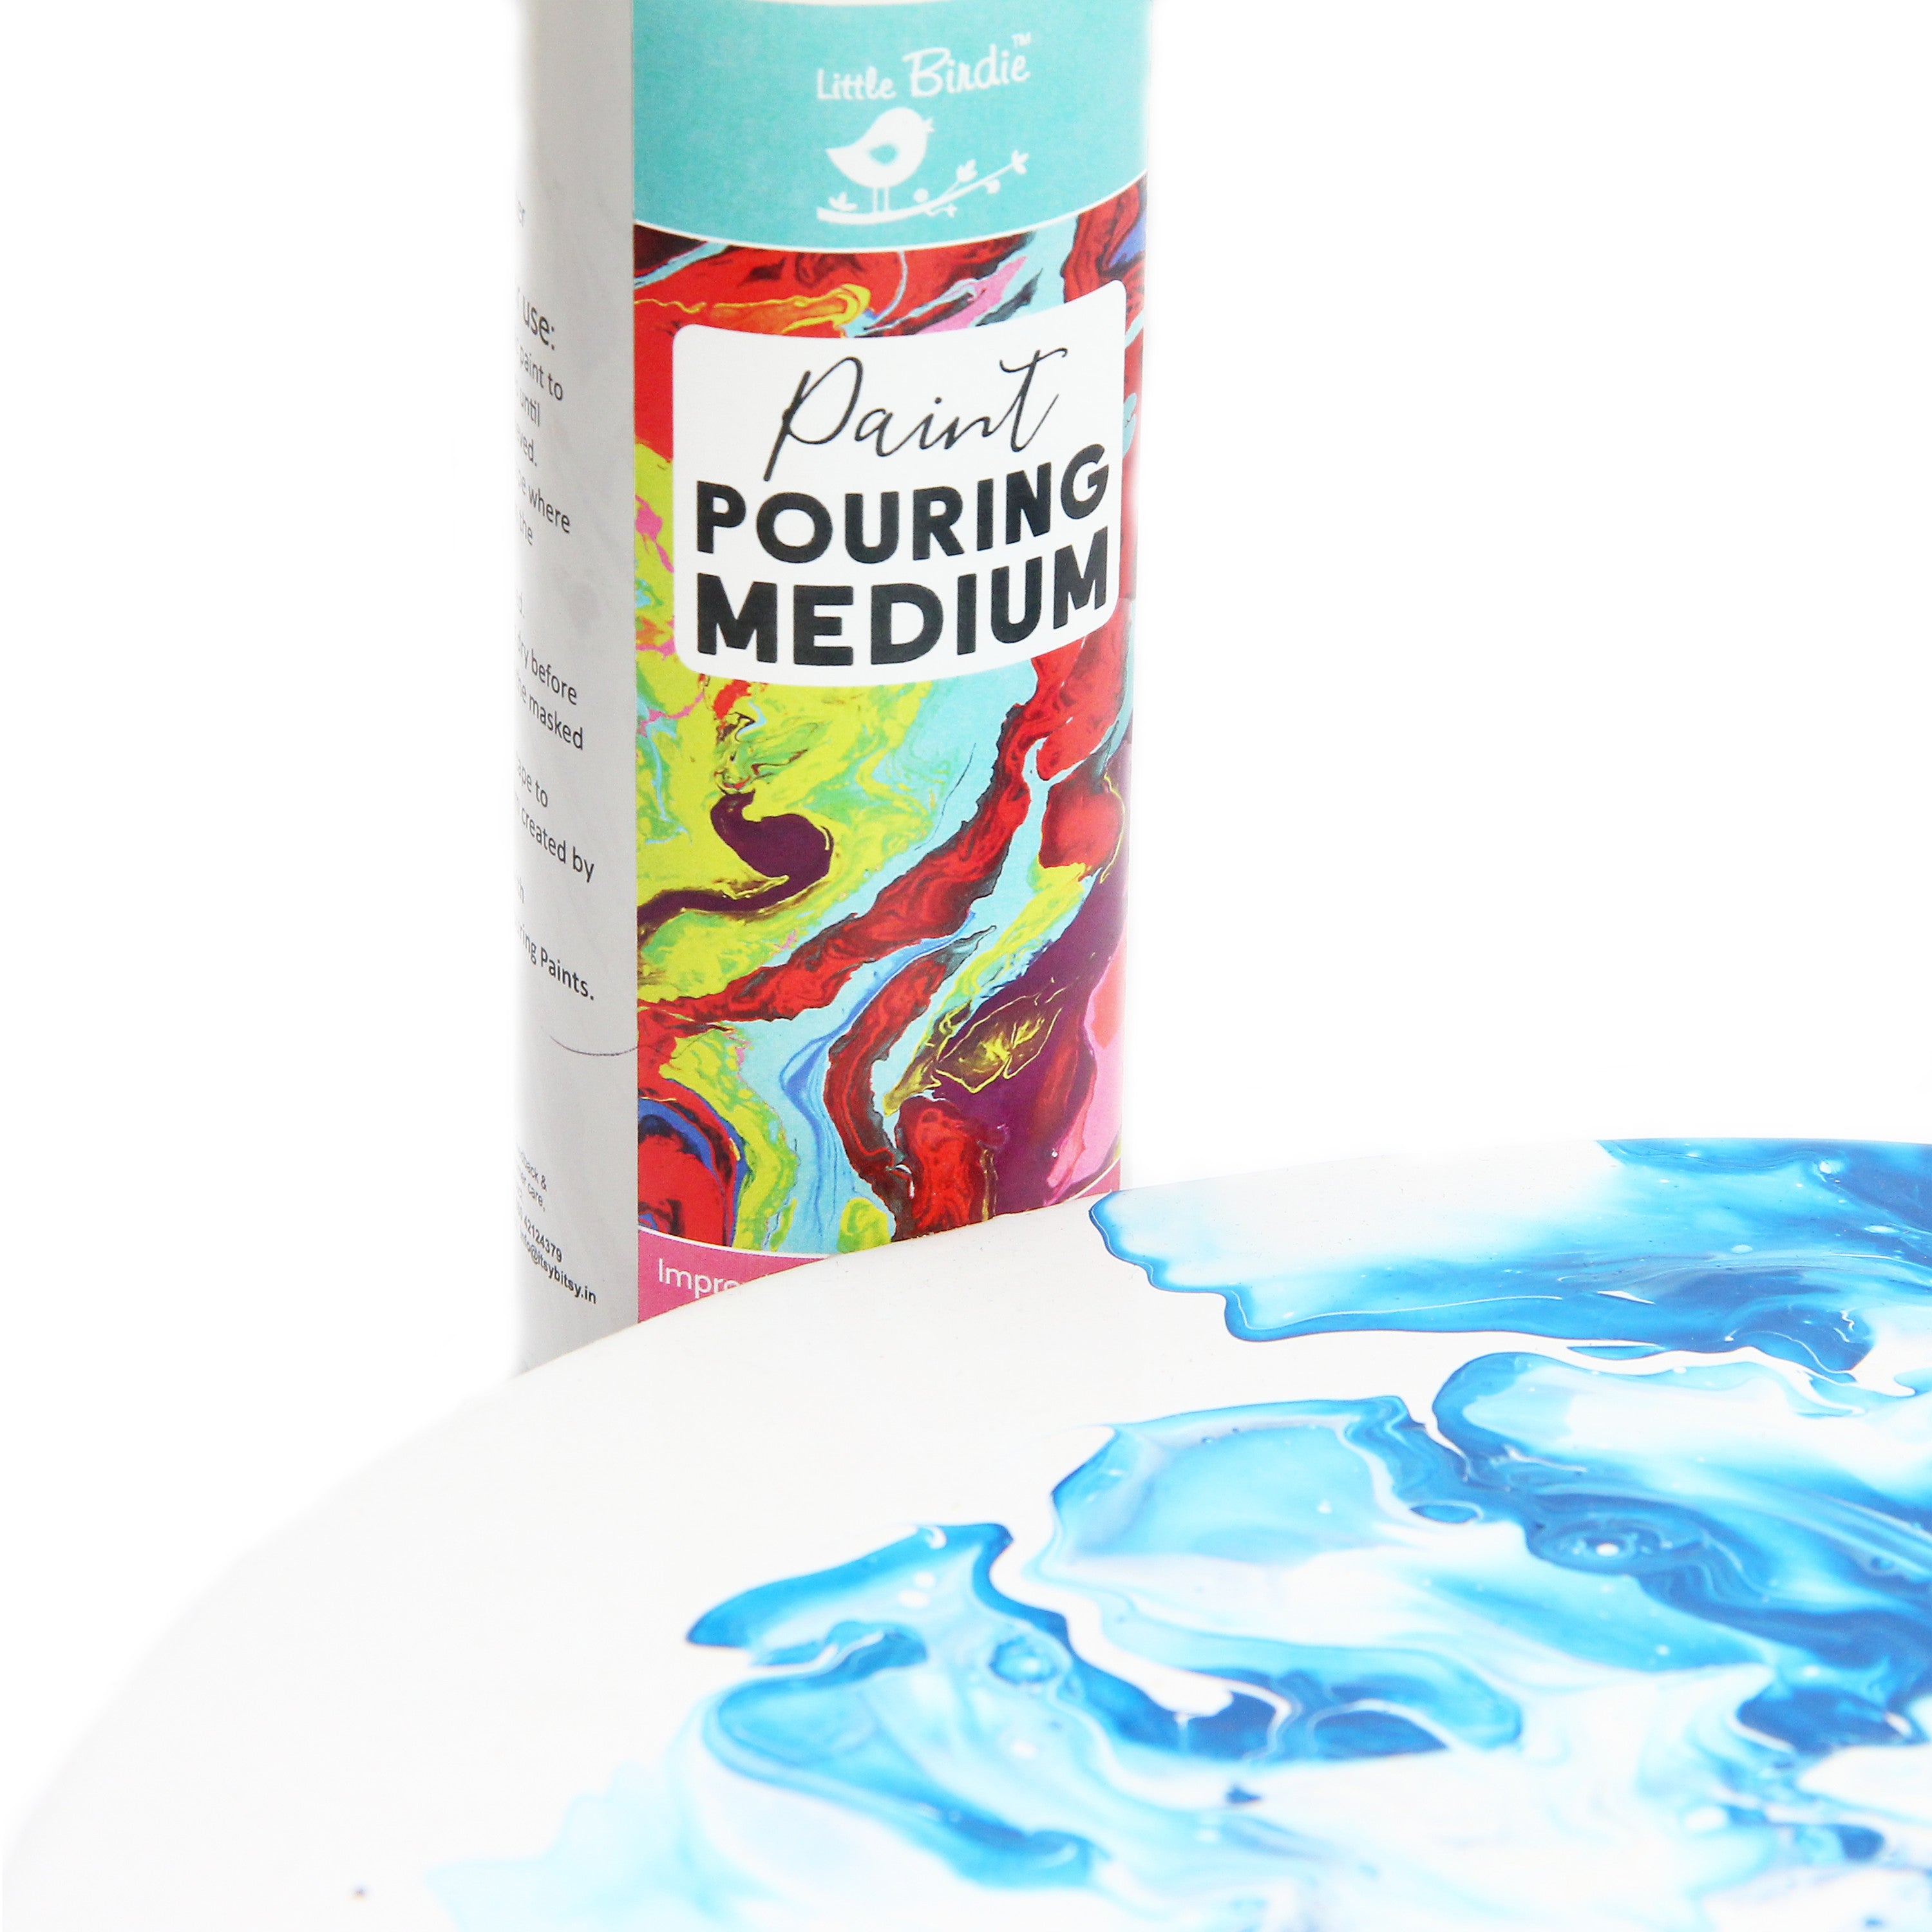 Pouring Paint Medium 500Ml Bottle Lb